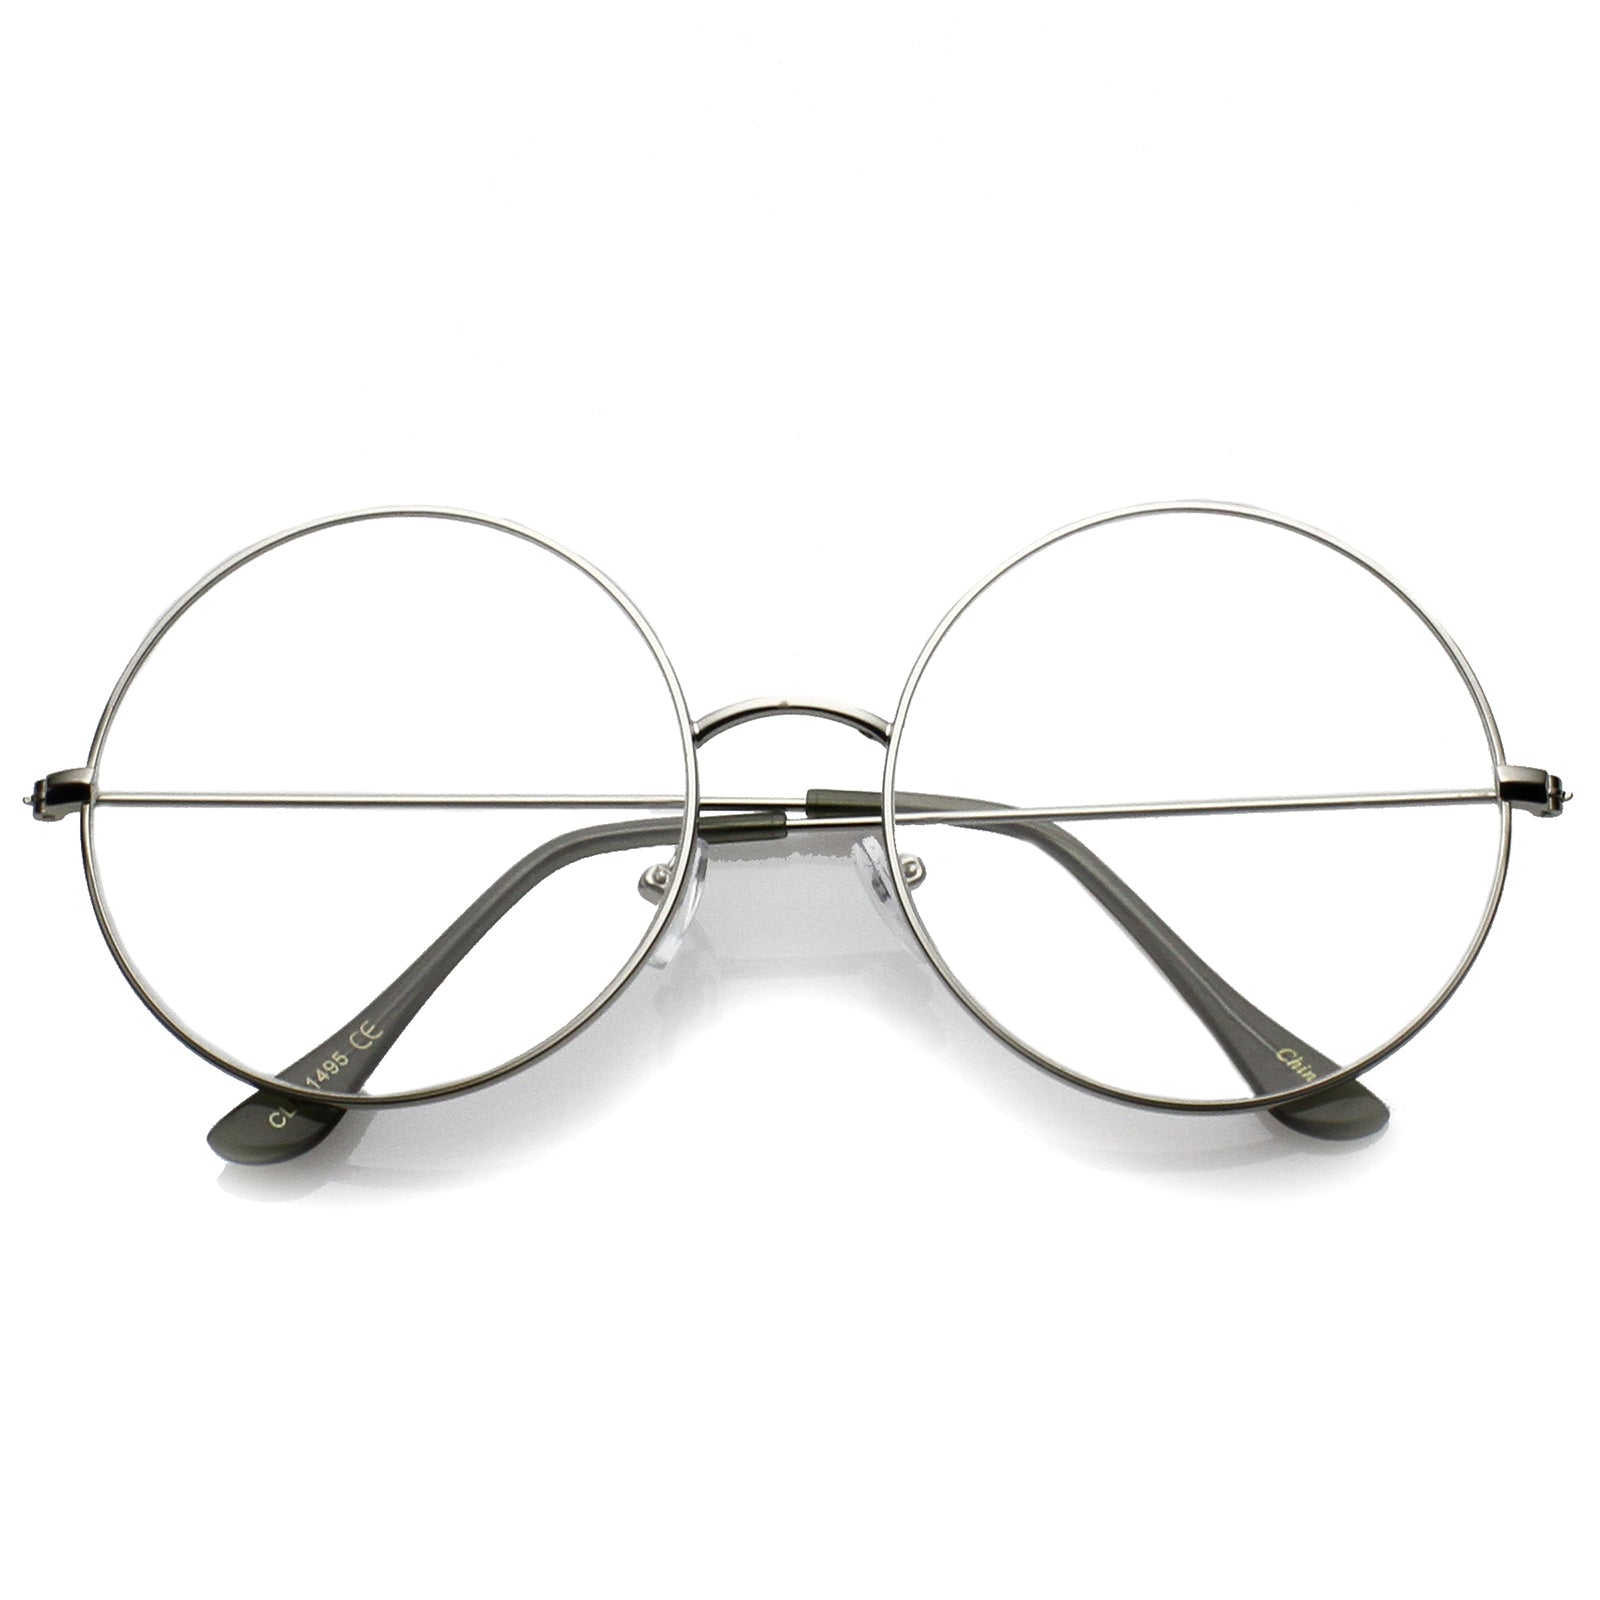 Round Eyeglasses - Eyeglasses